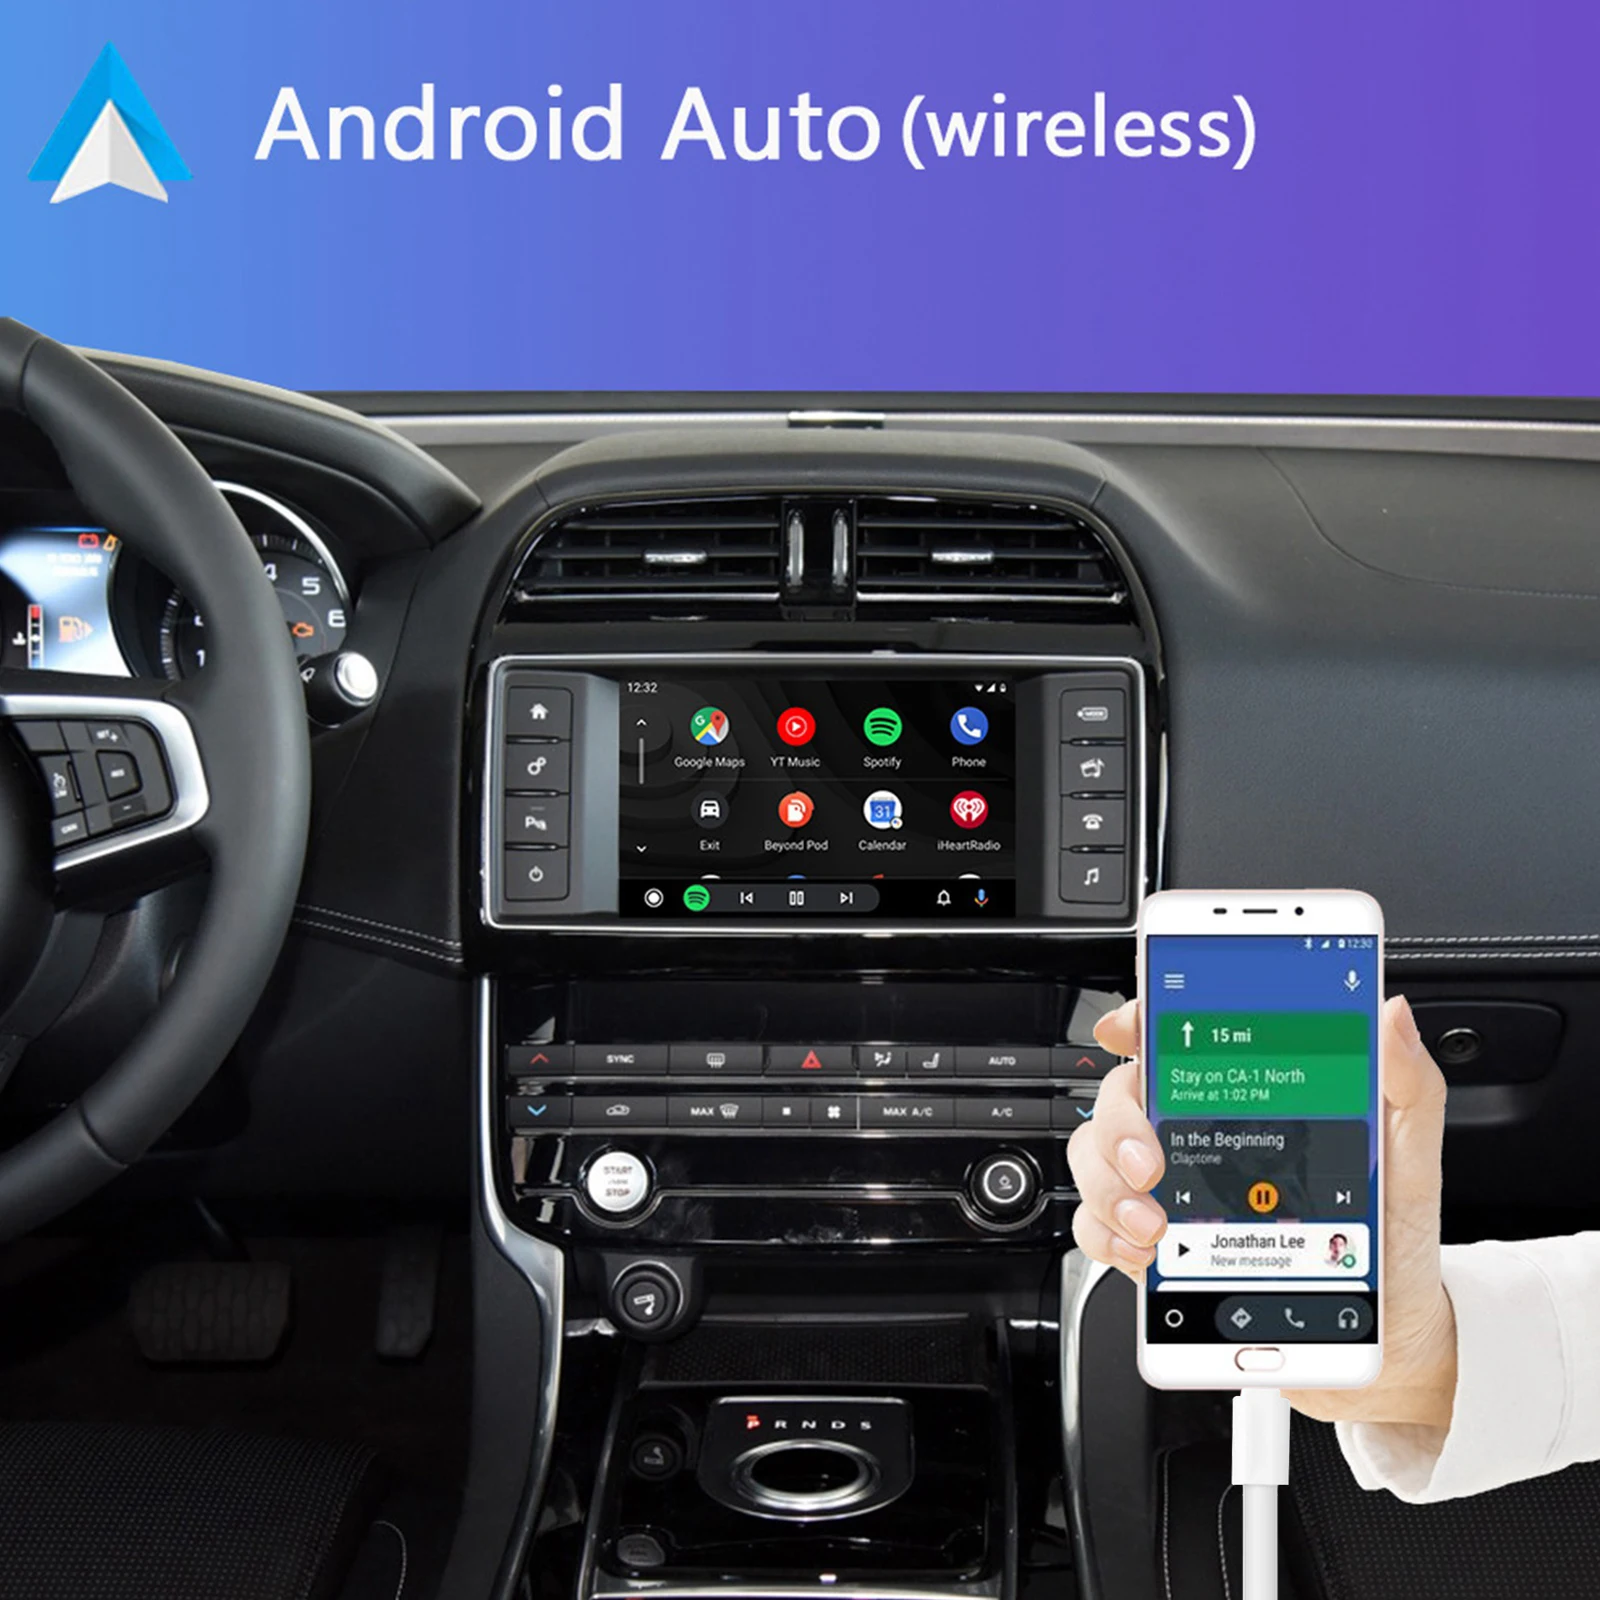 8-дюймовый беспроводной Carplay для Land Rover Android Auto подходит для JAGUAR Upgrade Декодер коробка комплект для дооснащения интерфейса